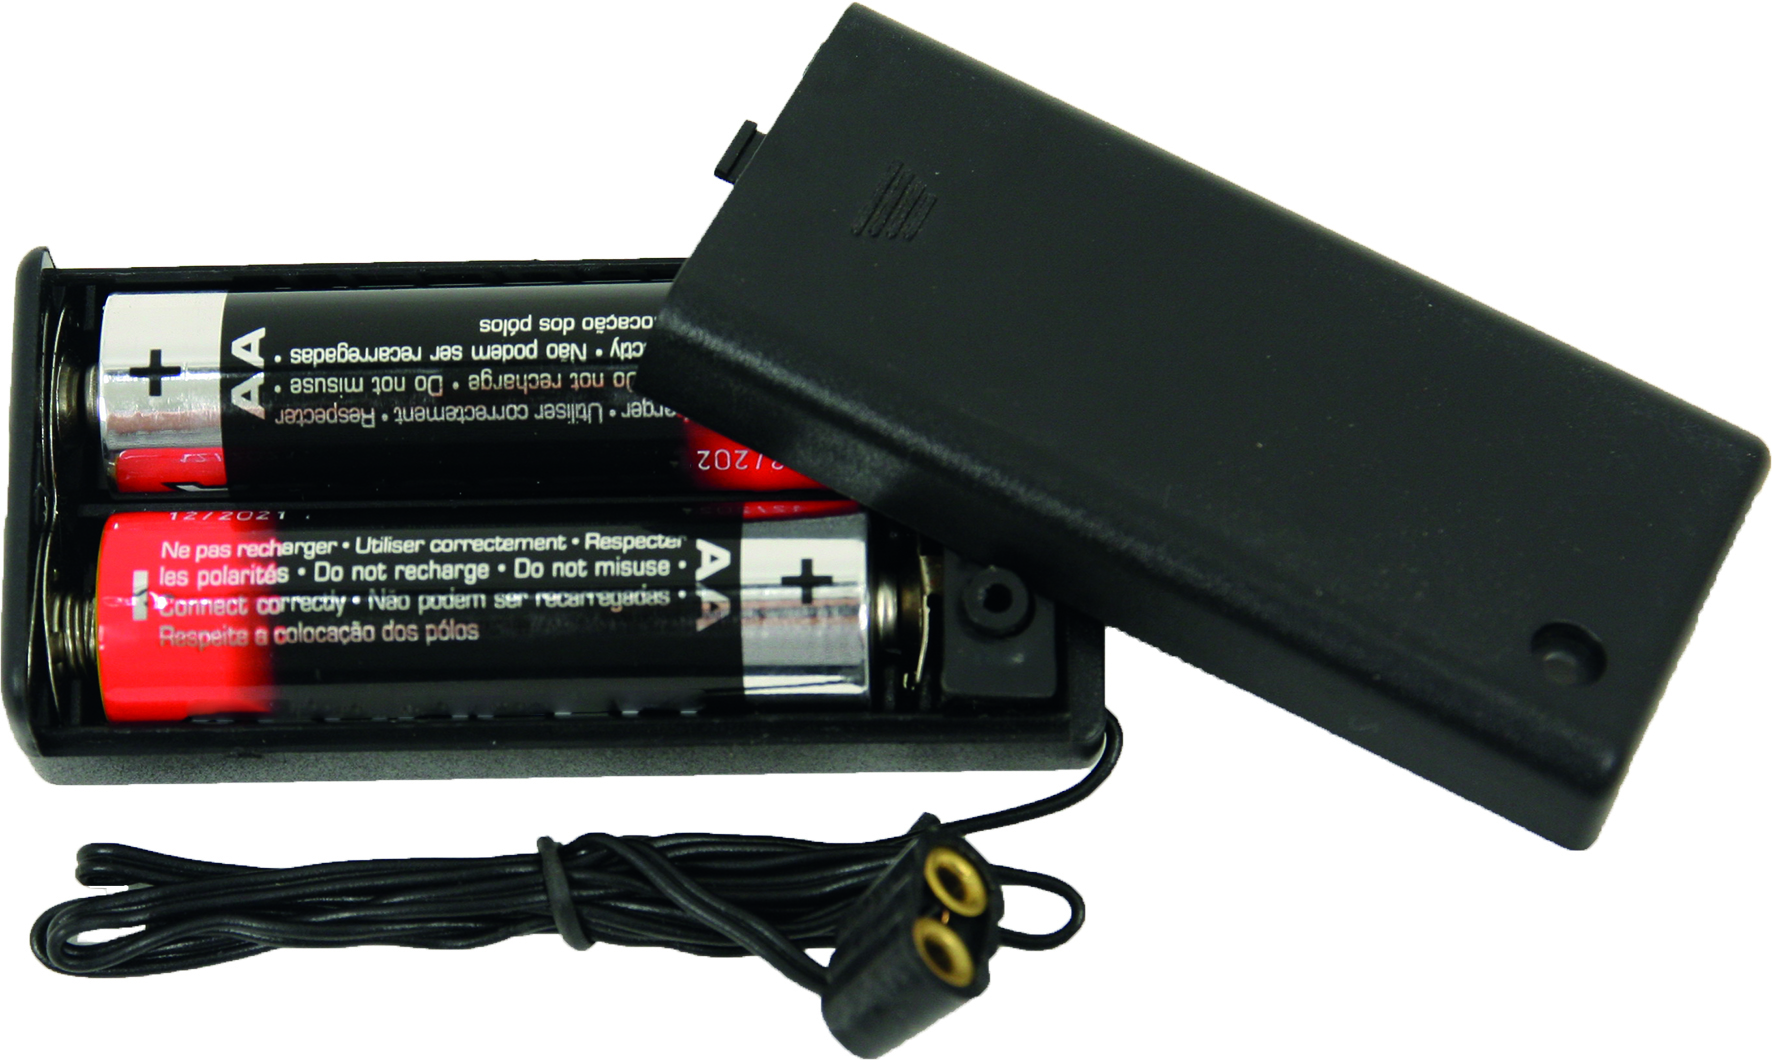 Batteriehalter (AA Batterien) für Stecker 3,5V 48cm Kabel 